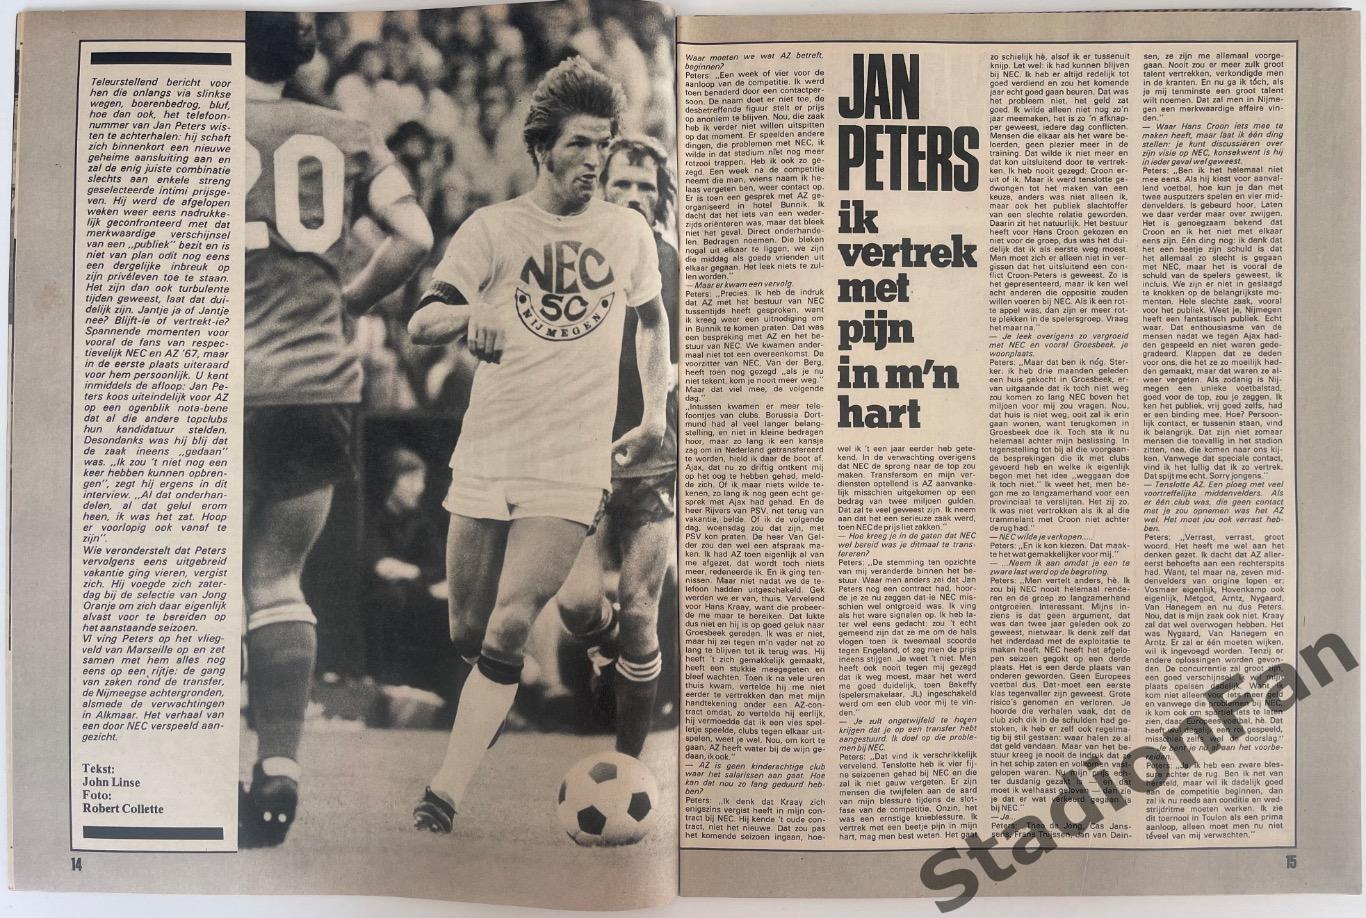 Журнал Voetbal nr.24 - 1977 год. 4